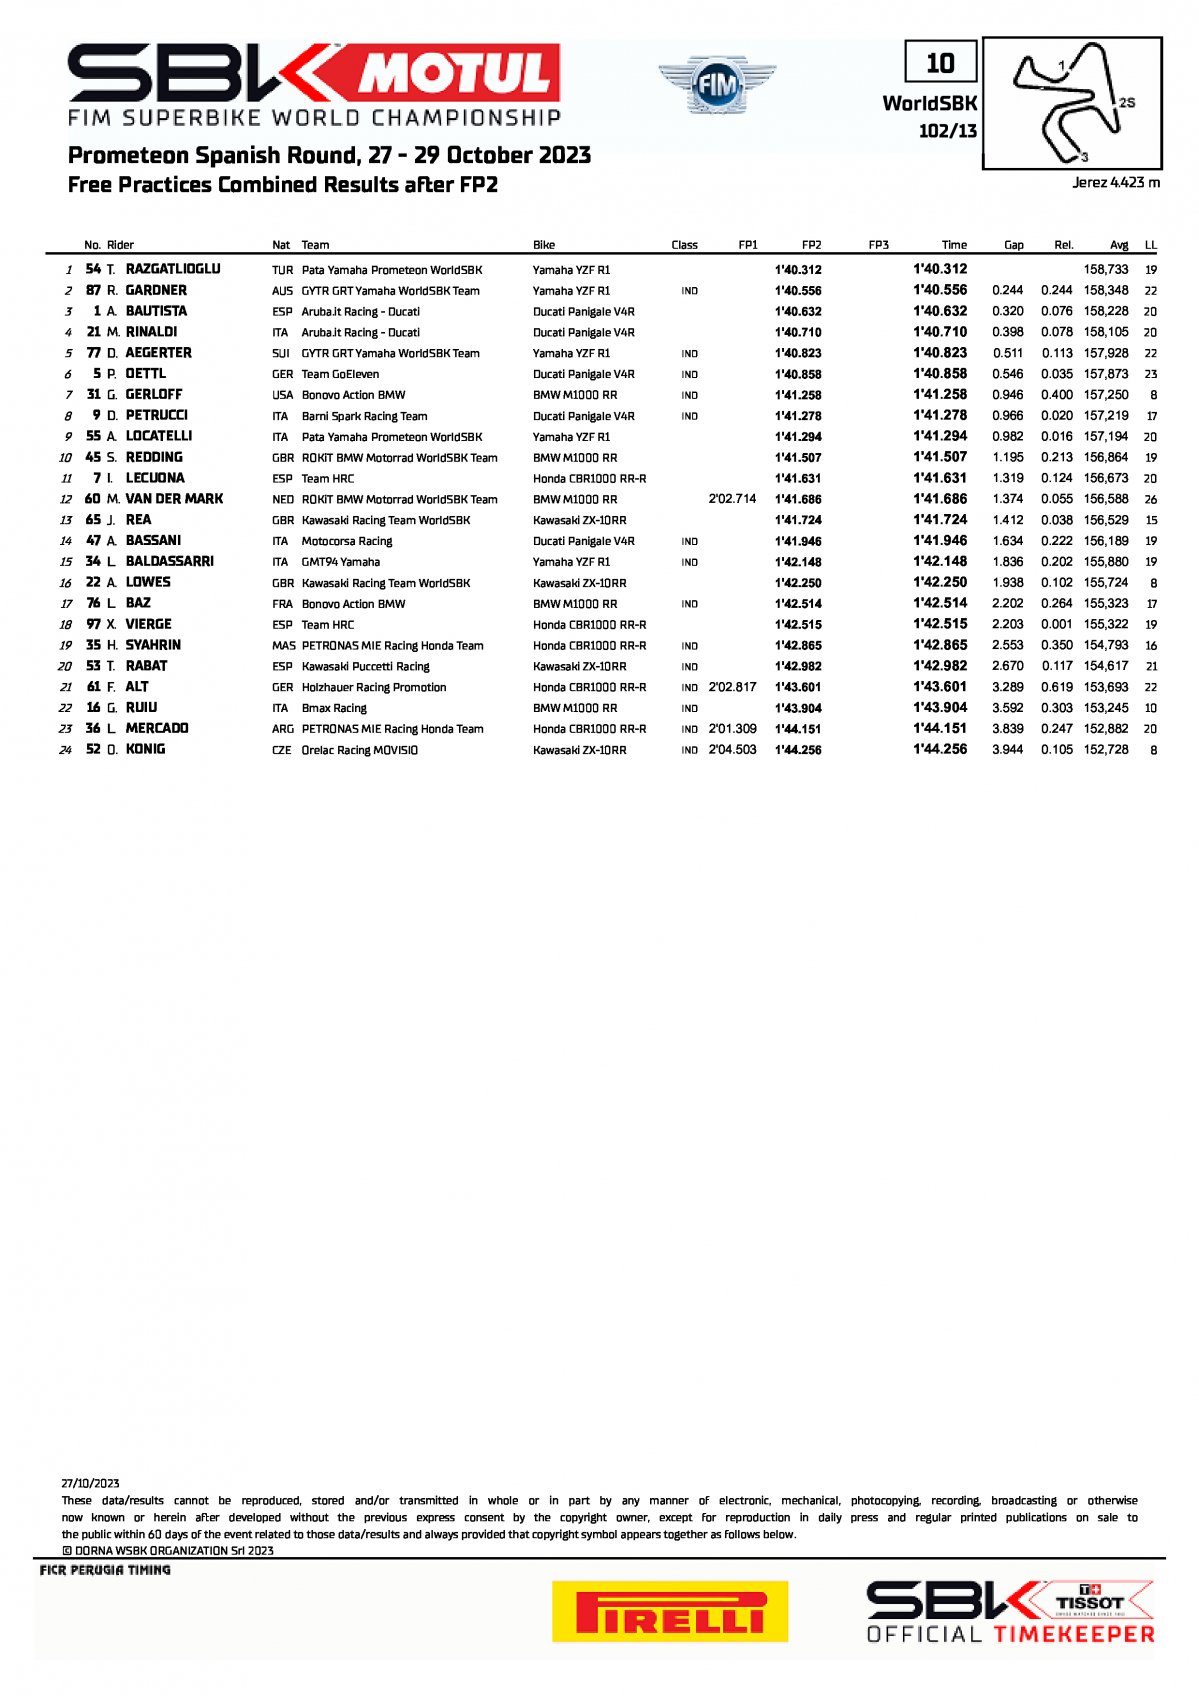 Итоговый протокол тренировочного дня WorldSBK, Circuito de Jerez (27/10/2023)